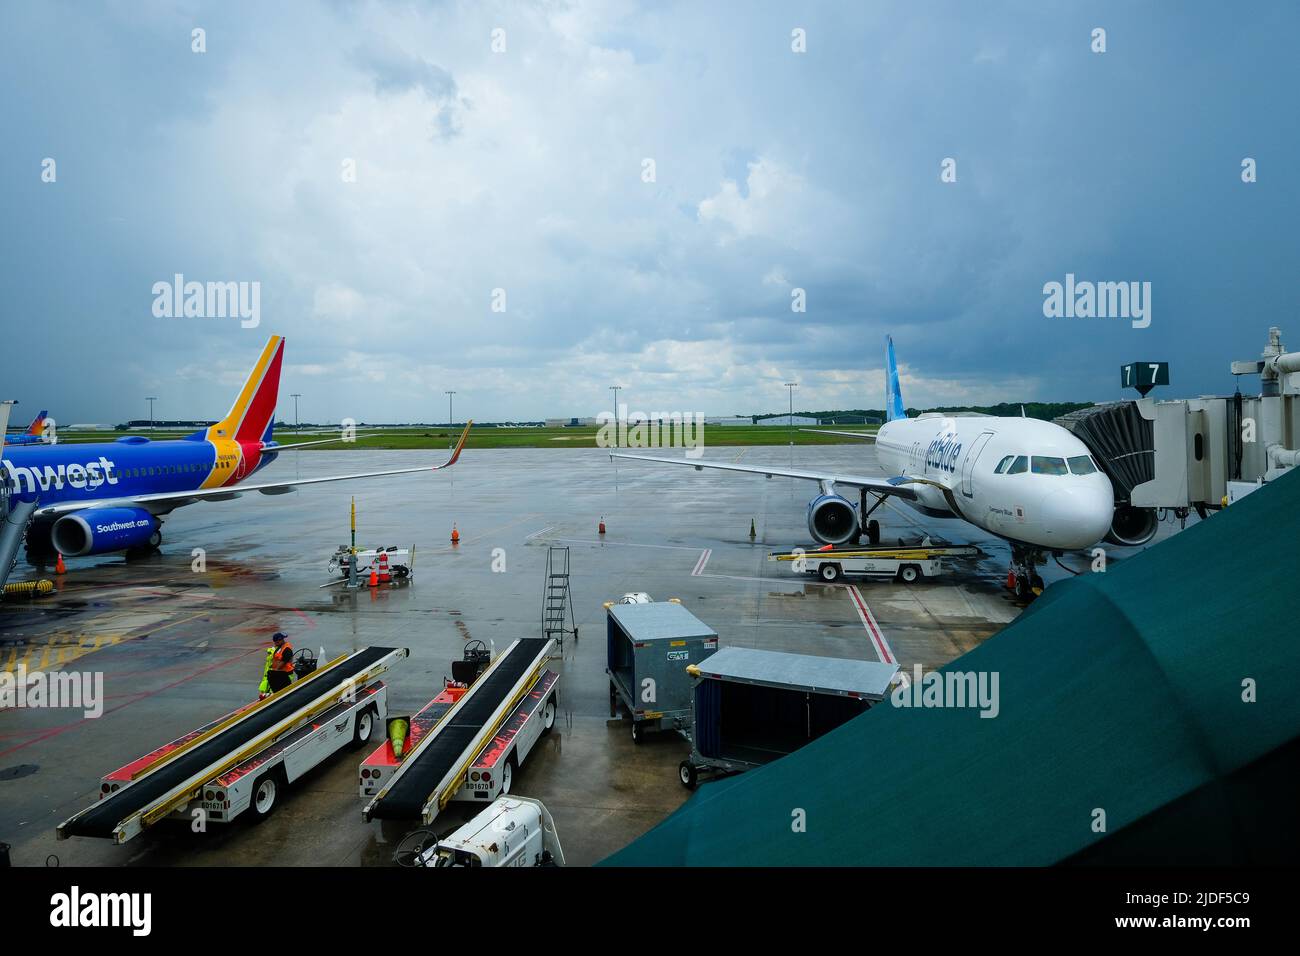 Stock-Bilder von South West und JetBlue Airlines. Aktuelle Flugverspätungen in den USA. Bodenpersonal, das Flüge und Gepäckförderer verwaltet. Stockfoto